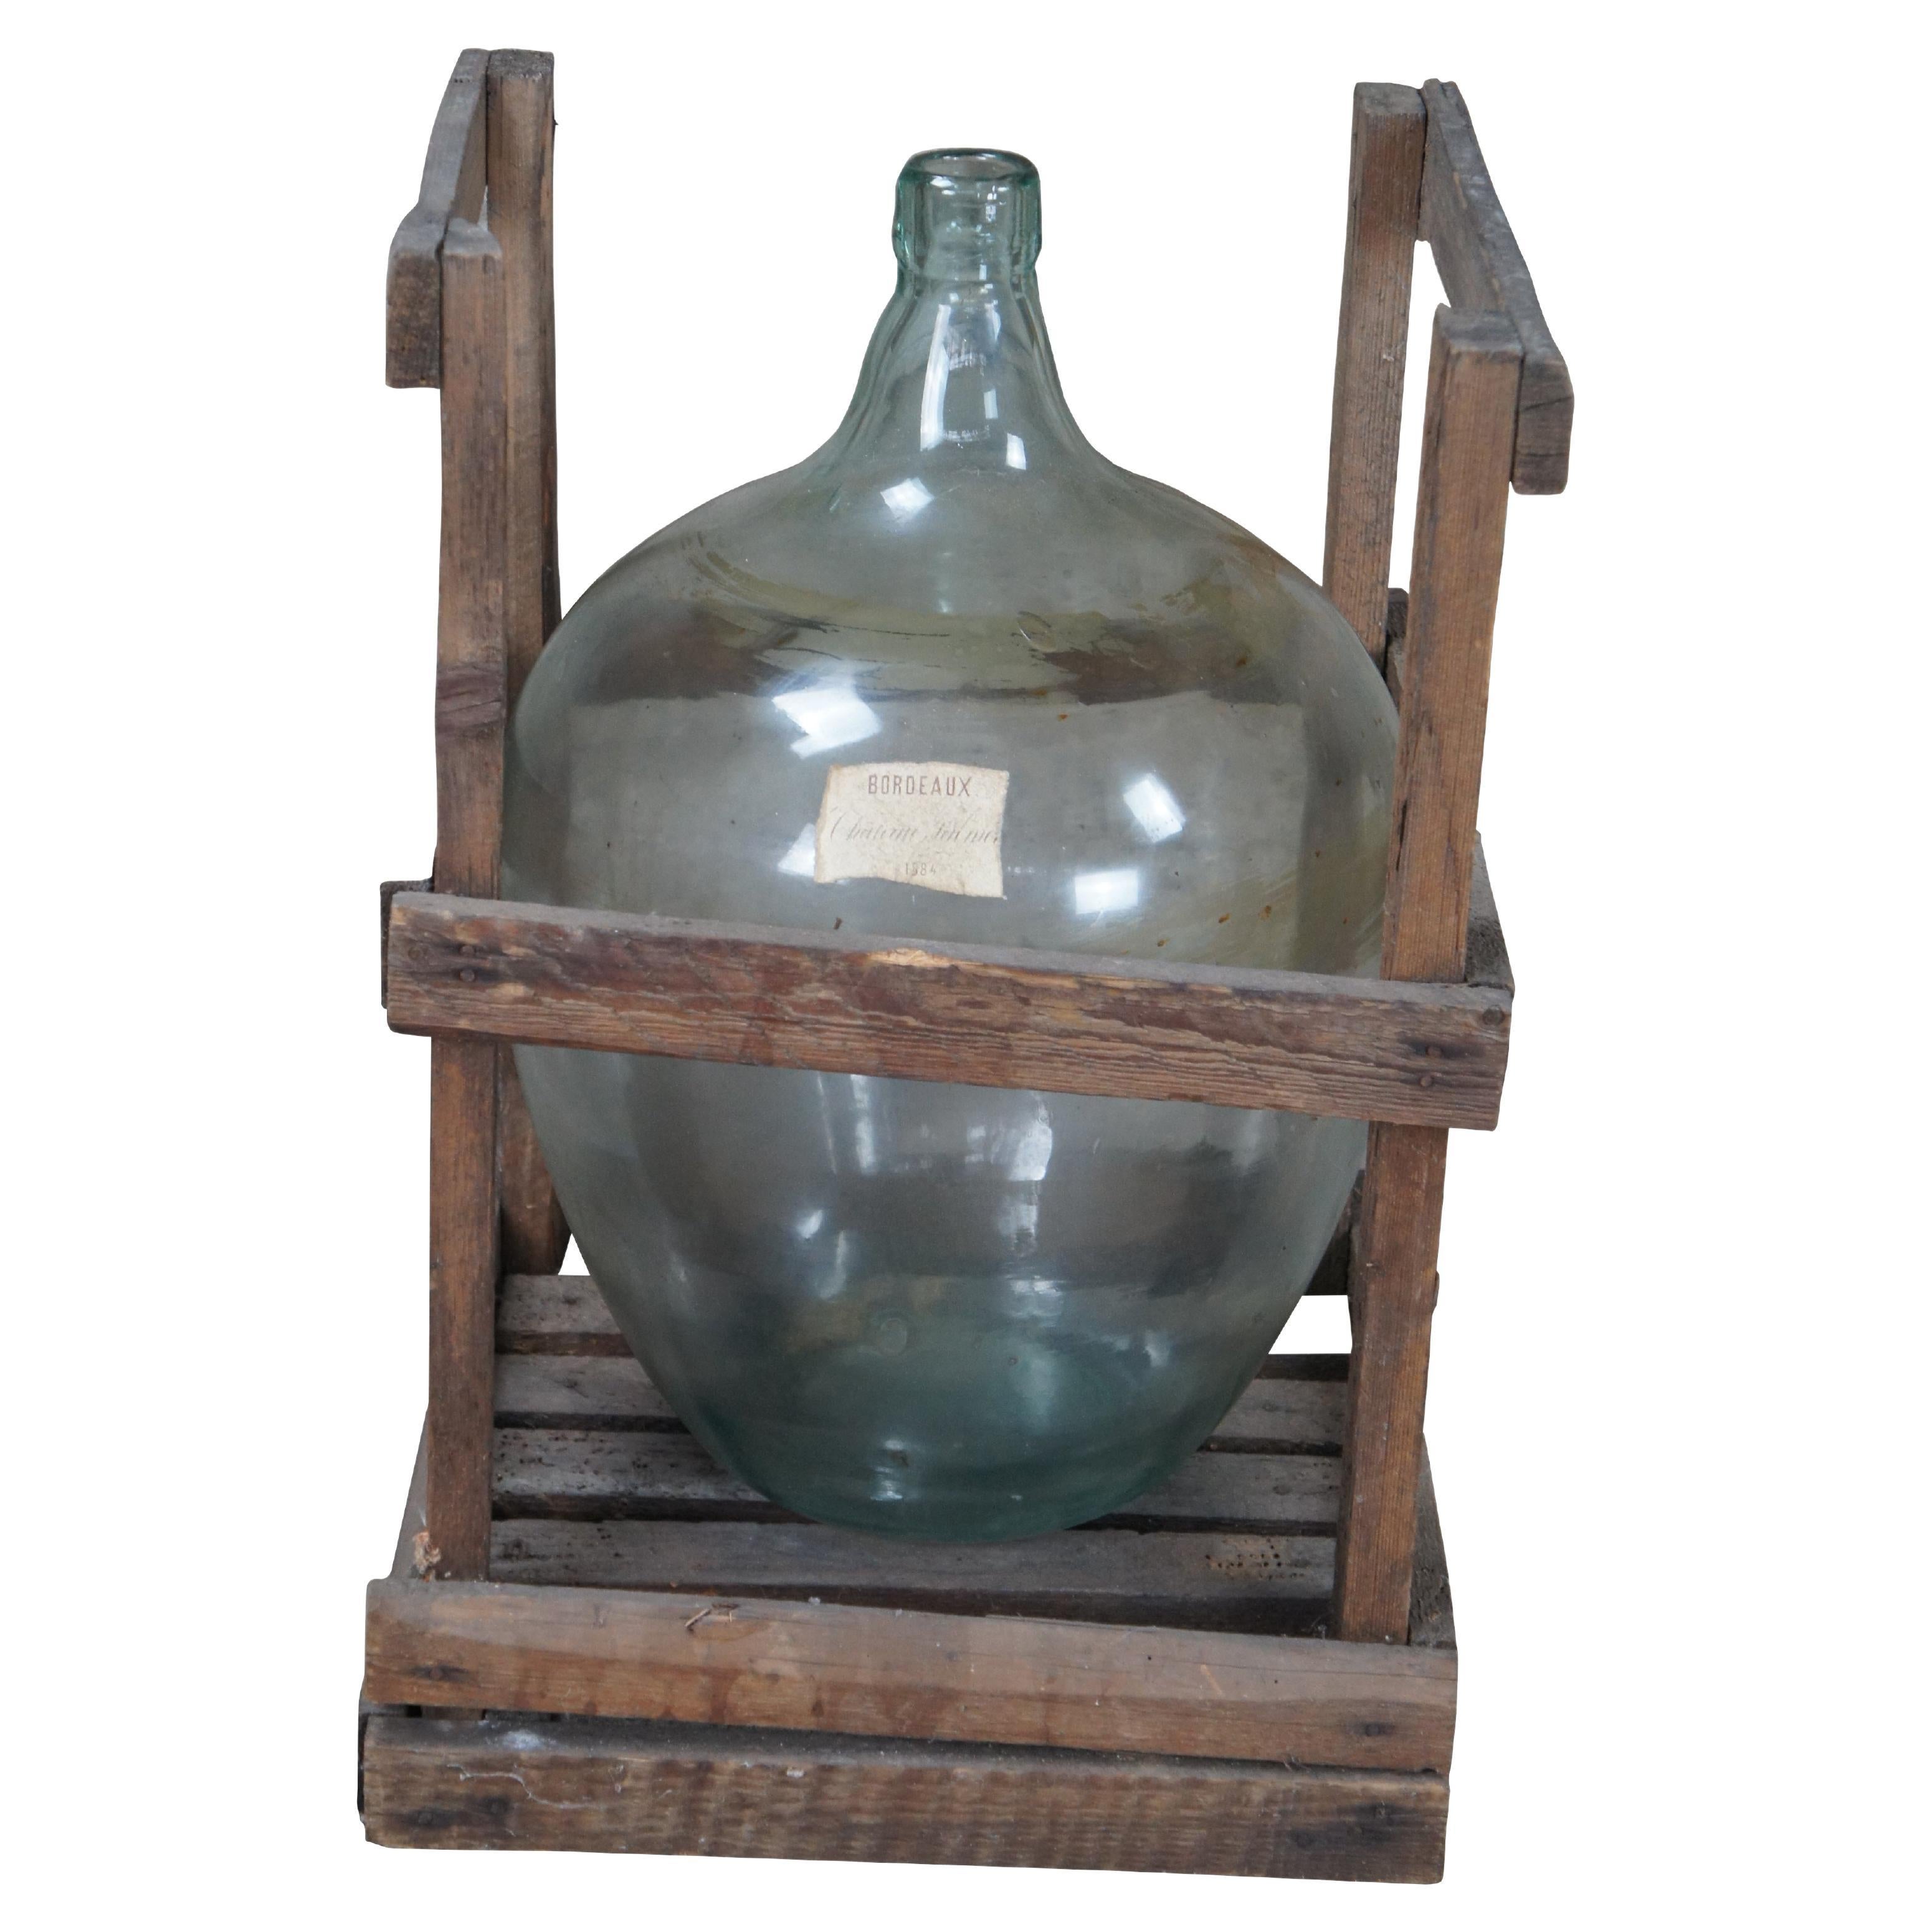 Ancienne carafe à bouteille de vin Demijohn Bordeaux en verre soufflé à la main